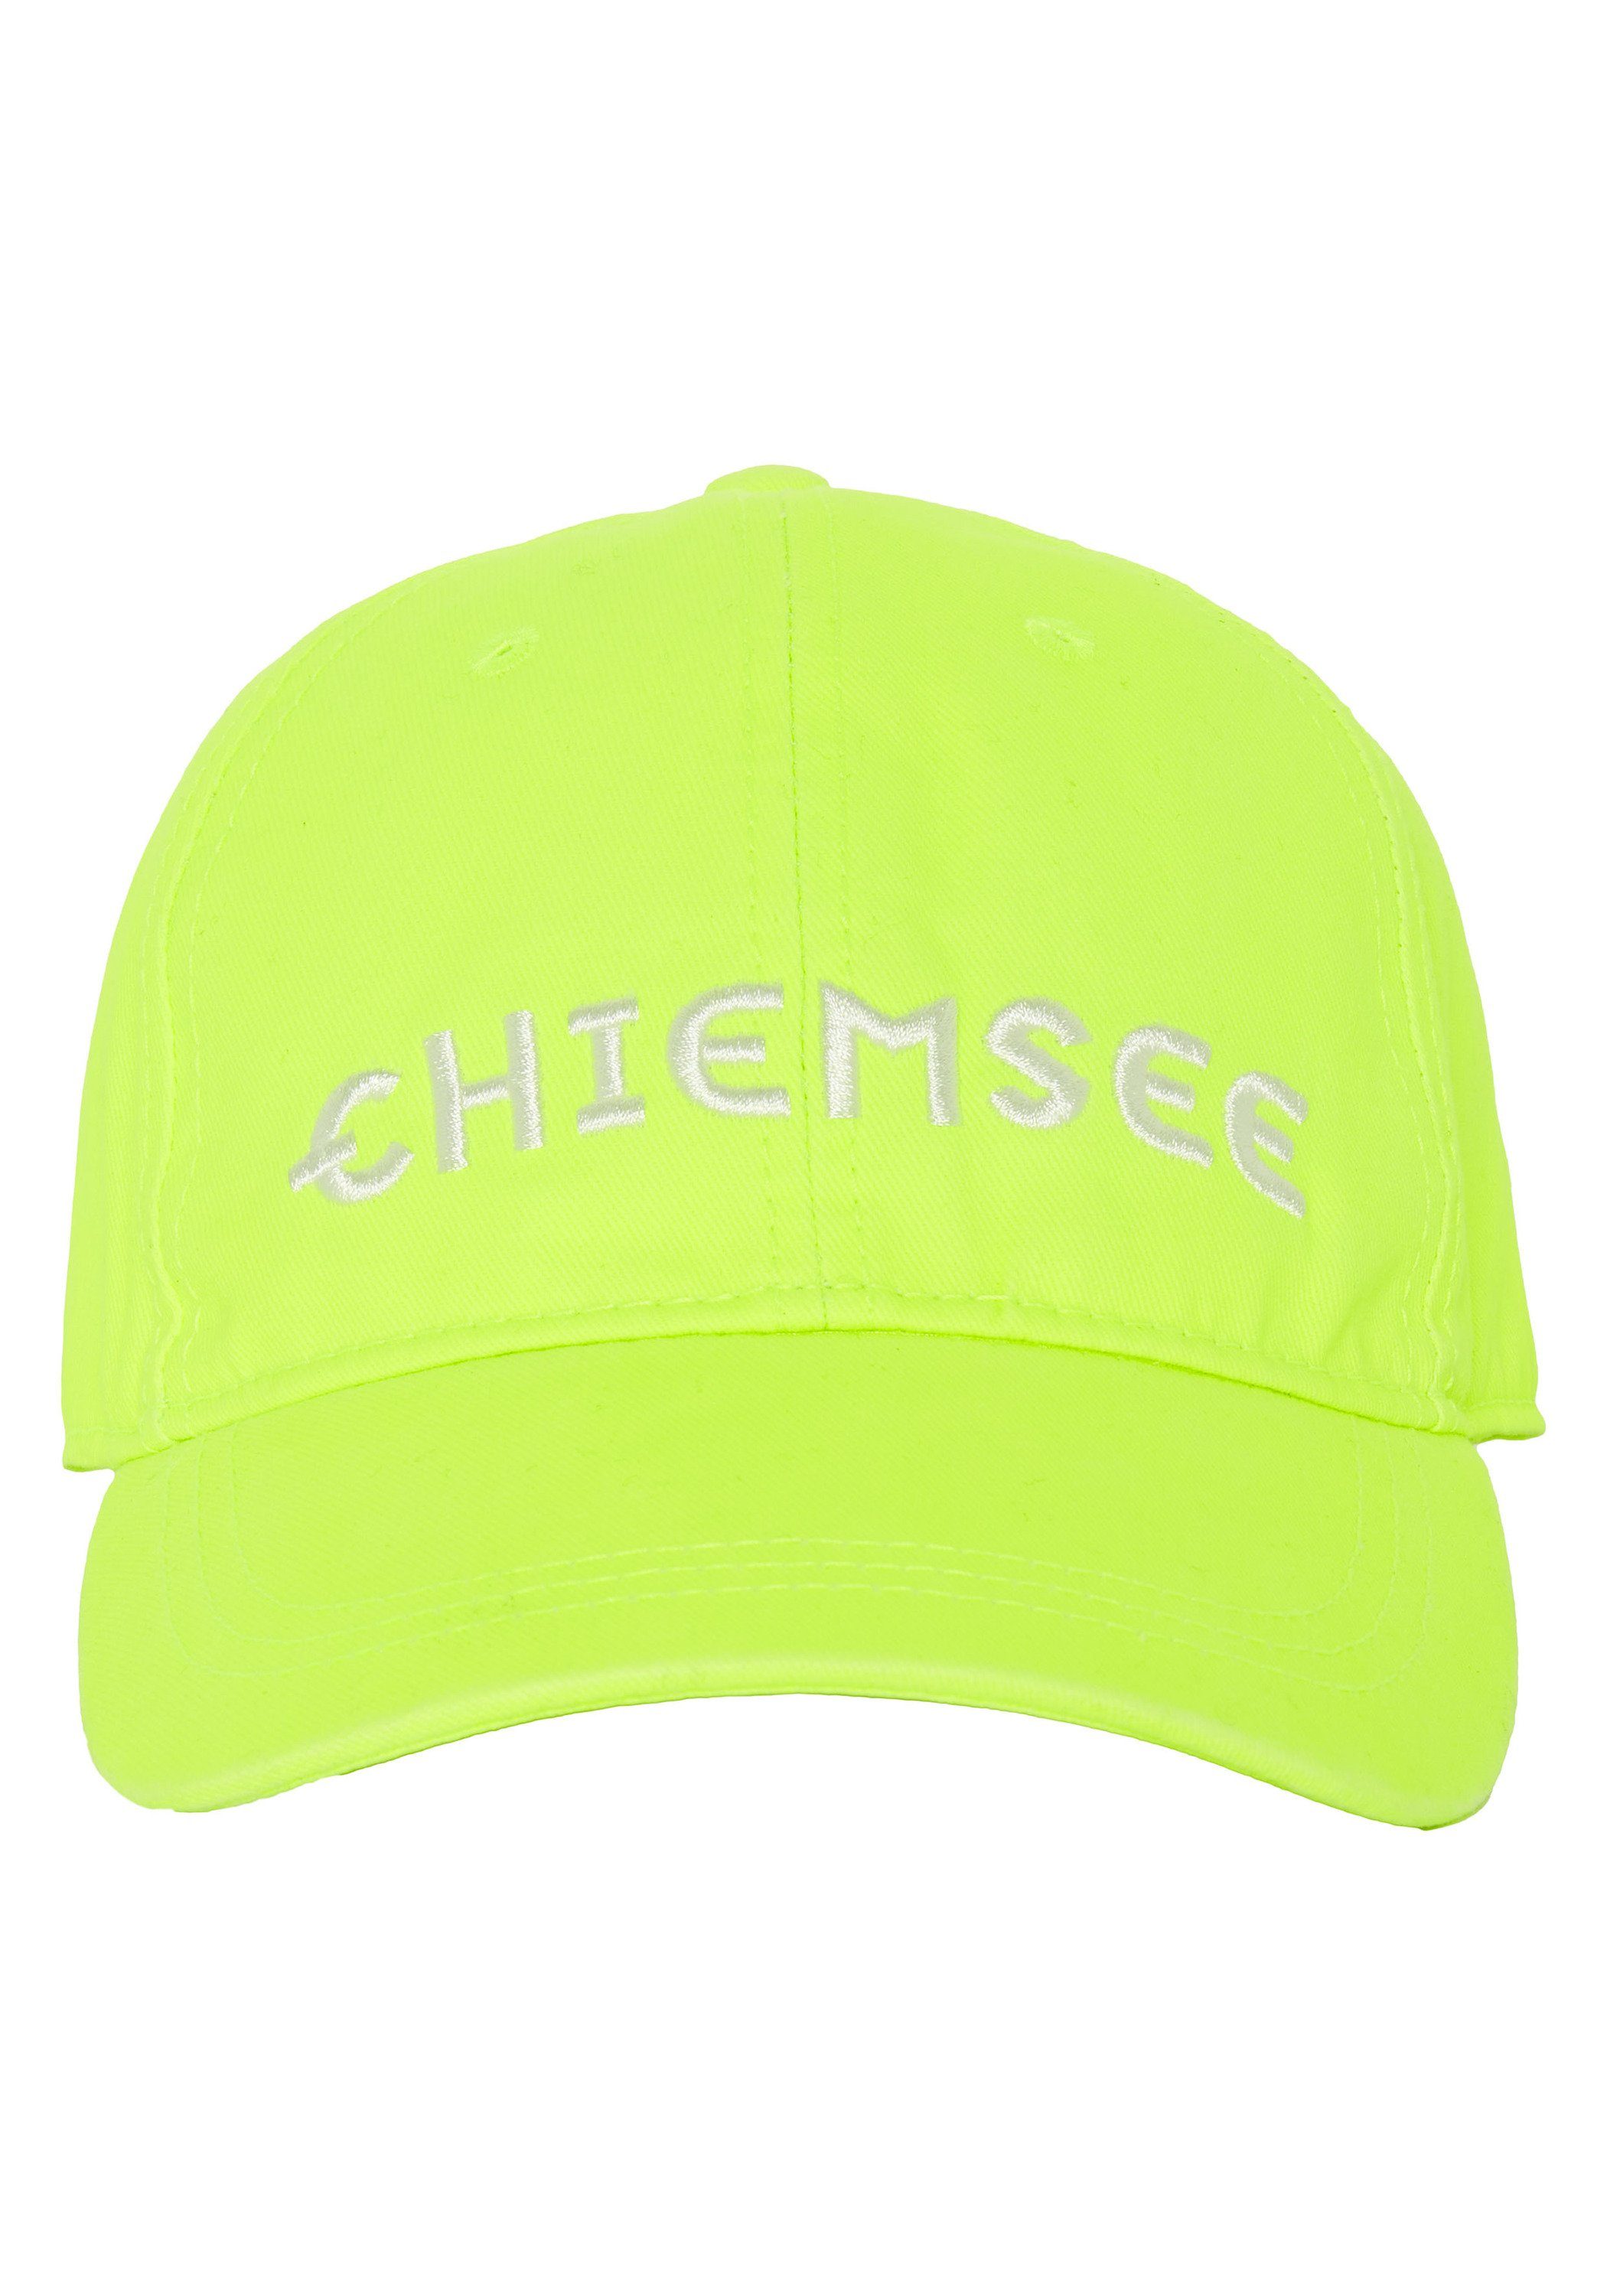 Chiemsee Baseball Cap Unisex Cap aus Baumwolle mit Logo 1 13-0630 Safety Yellow